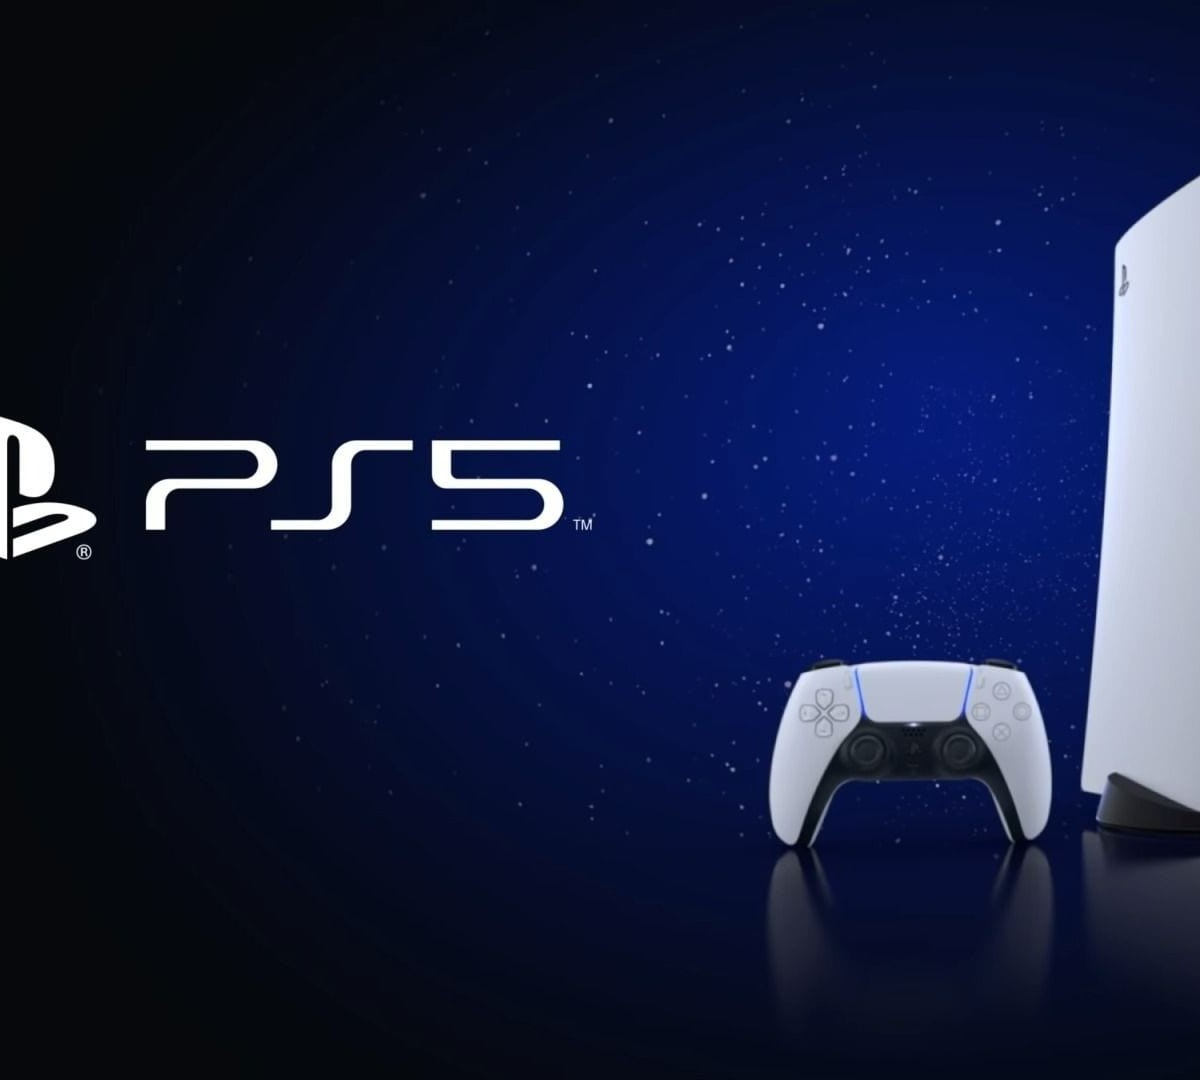 Usuários do PS4 e PS5 poderão jogar online de graça neste fim de semana